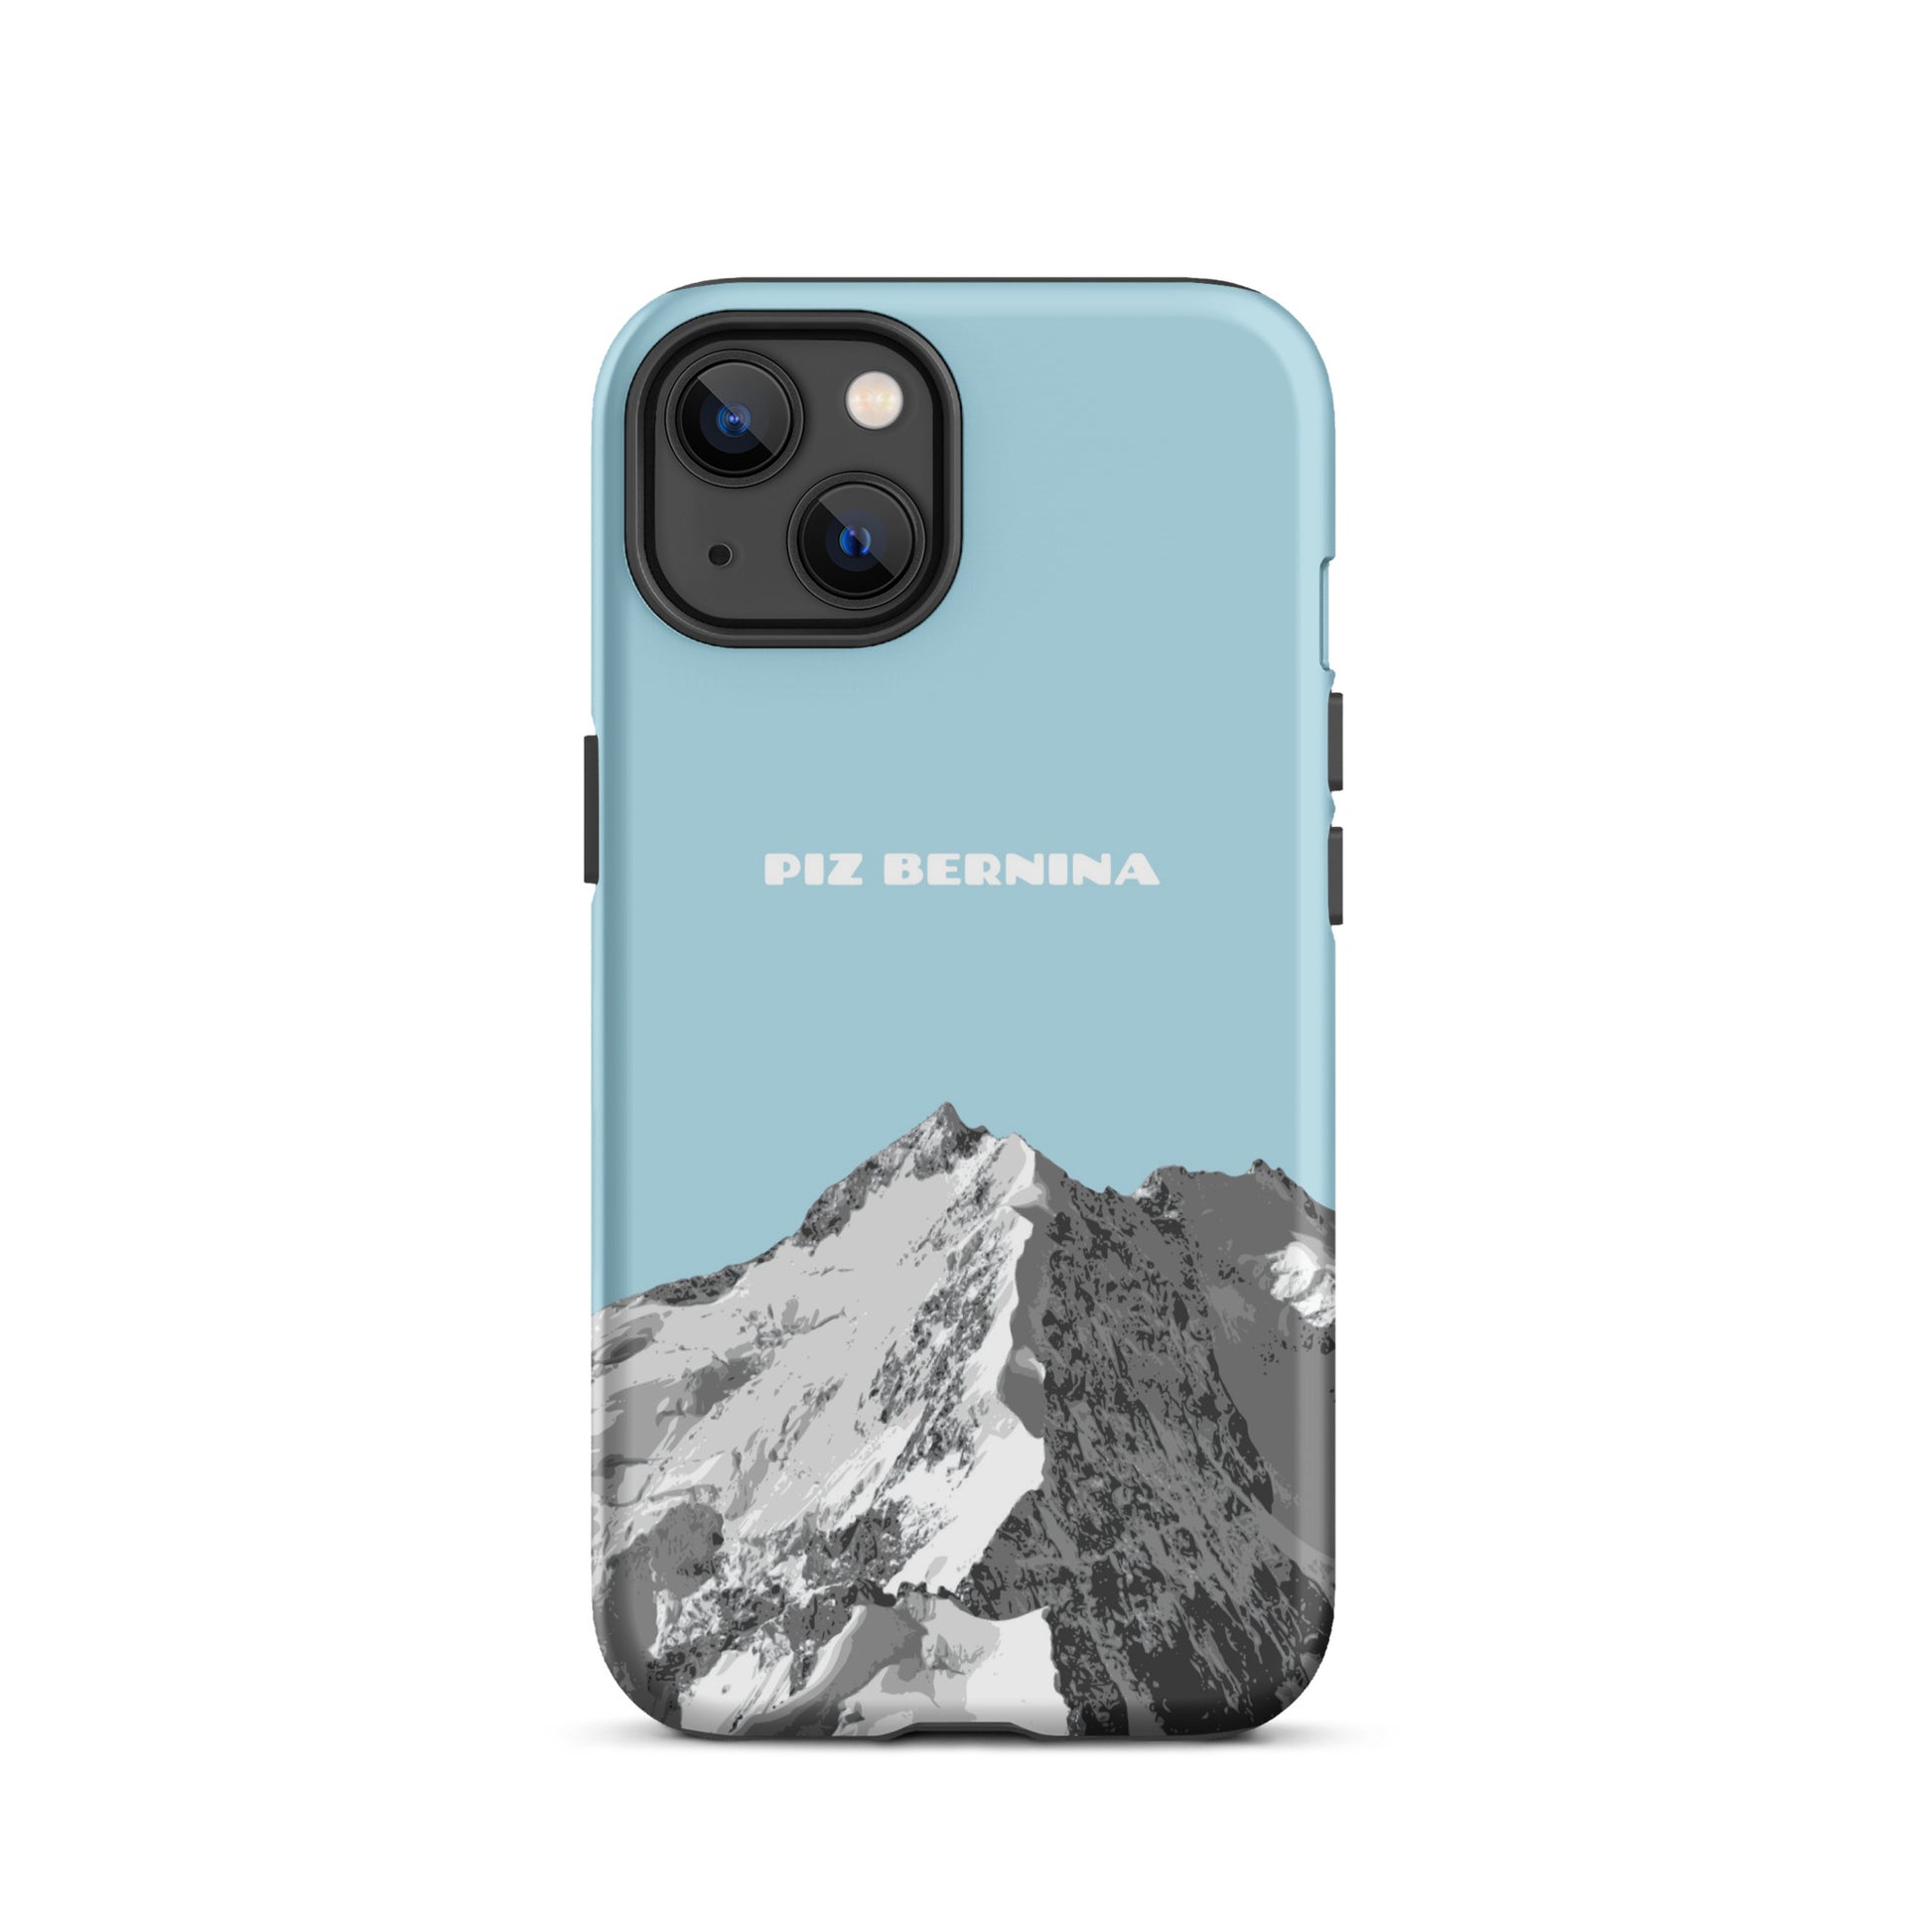 Hülle für das iPhone 13 von Apple in der Farbe Hellblau, dass den Piz Bernina in Graubünden zeigt.